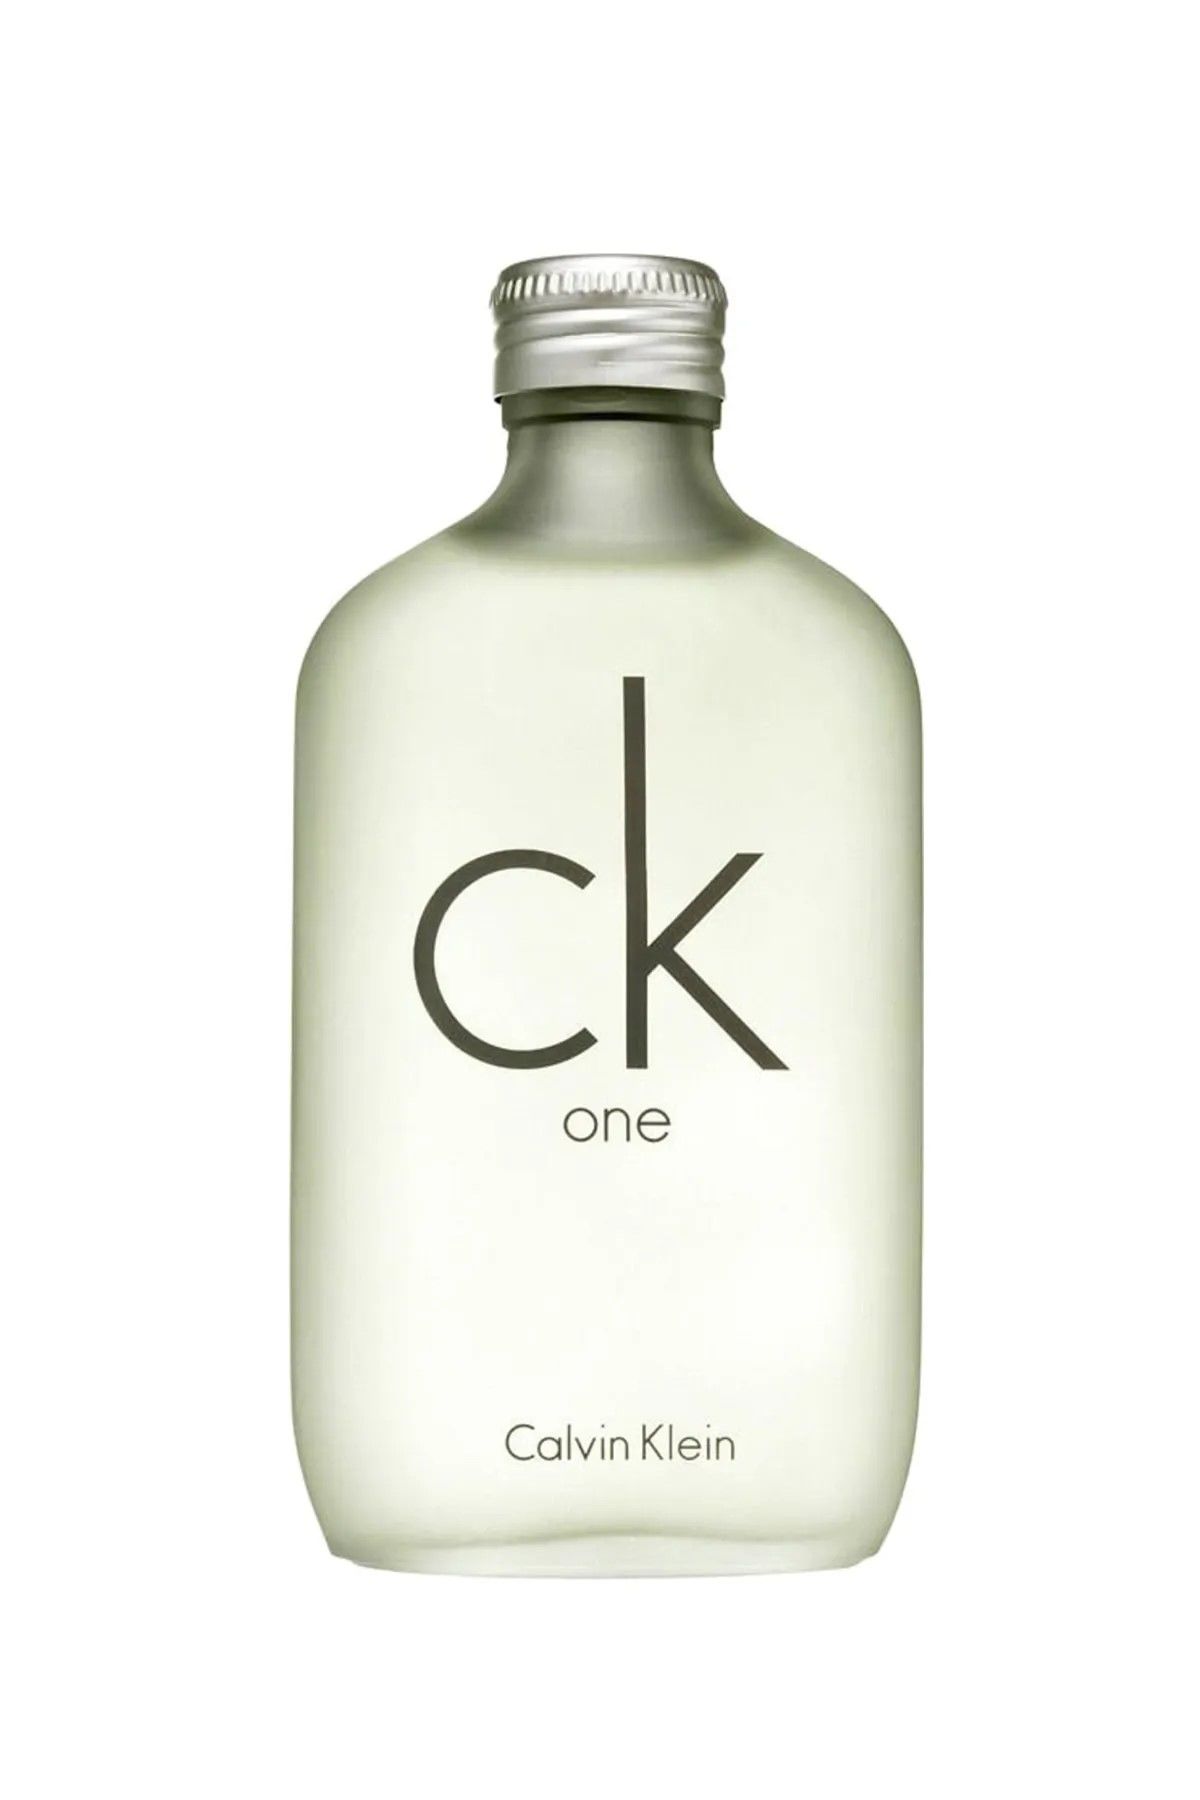 Calvin Klein One Edt 100 ml